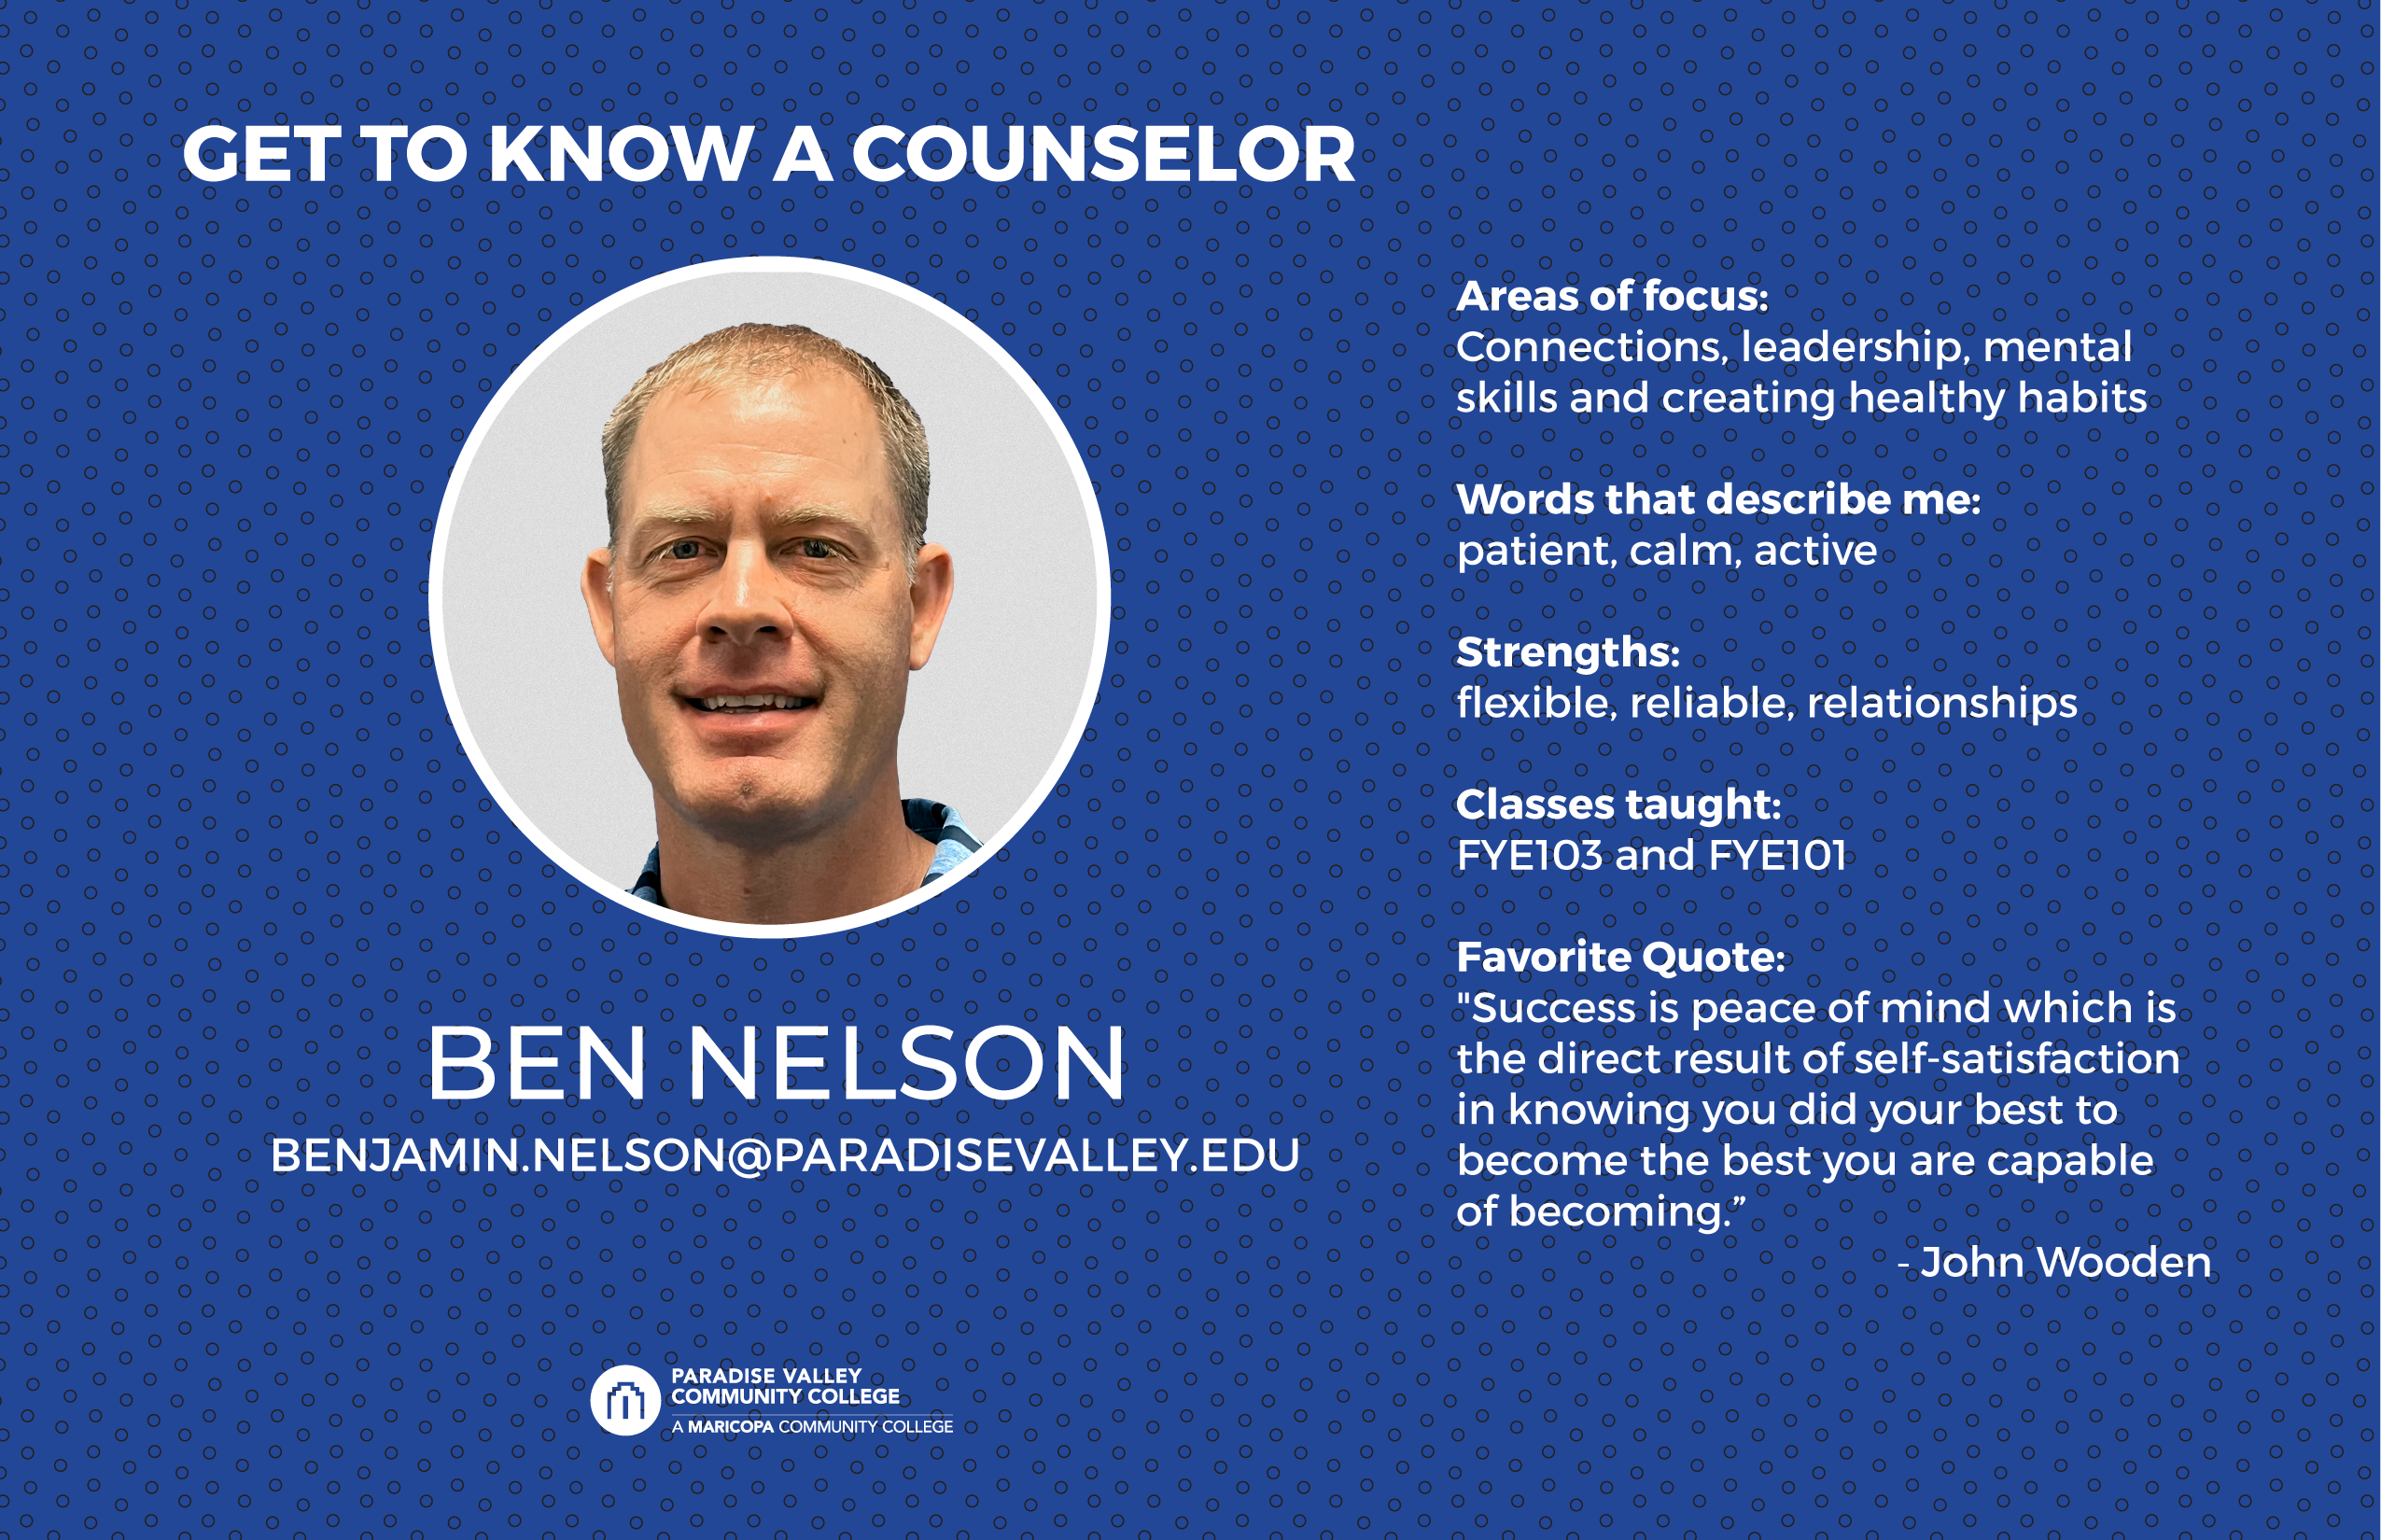 Ben Nelson - Counselor